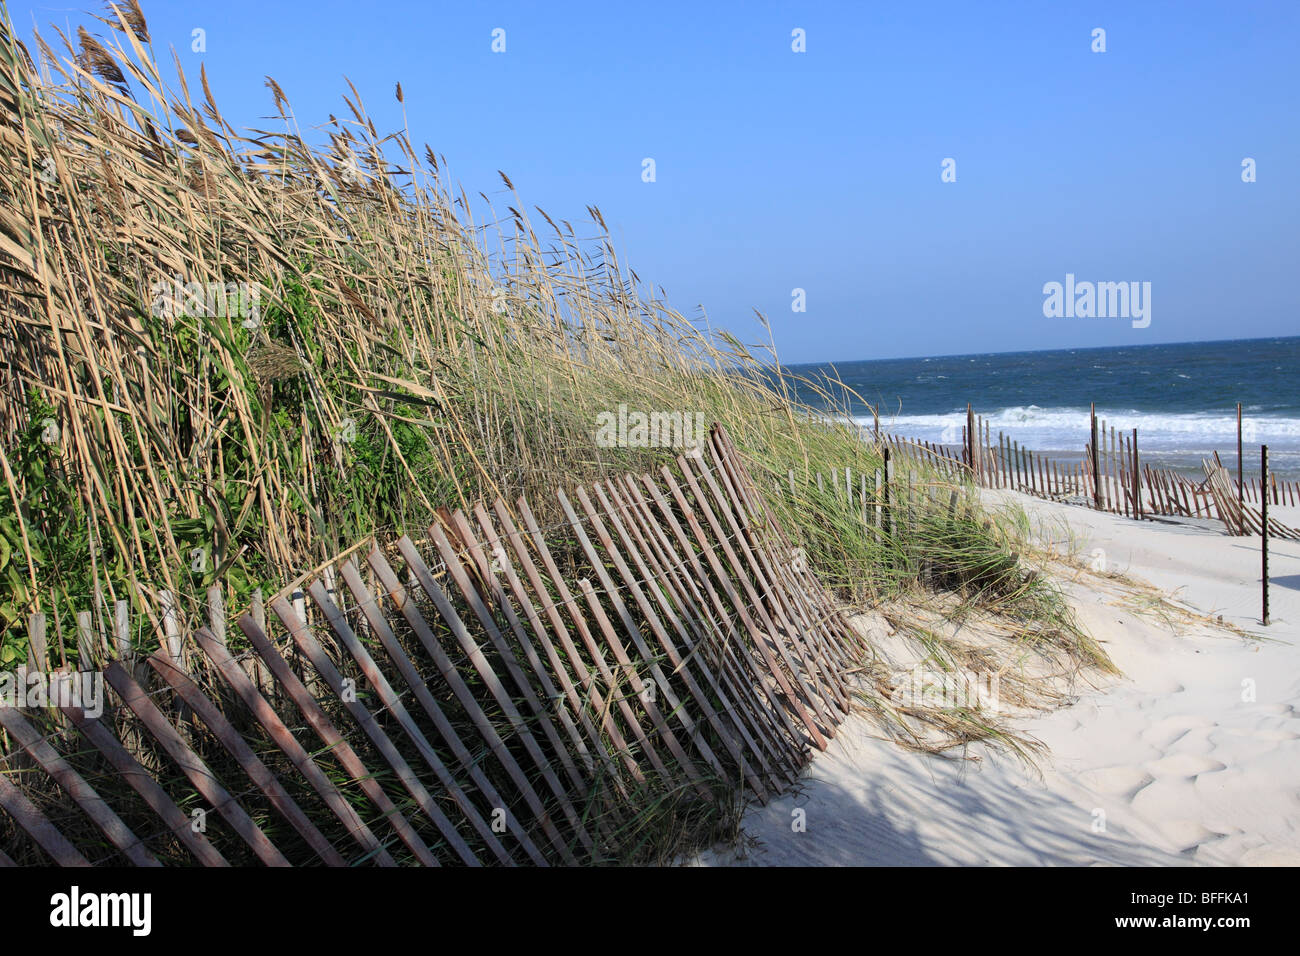 Atlantic Ocean at Smith Point Beach, Long Island, NY Stock Photo